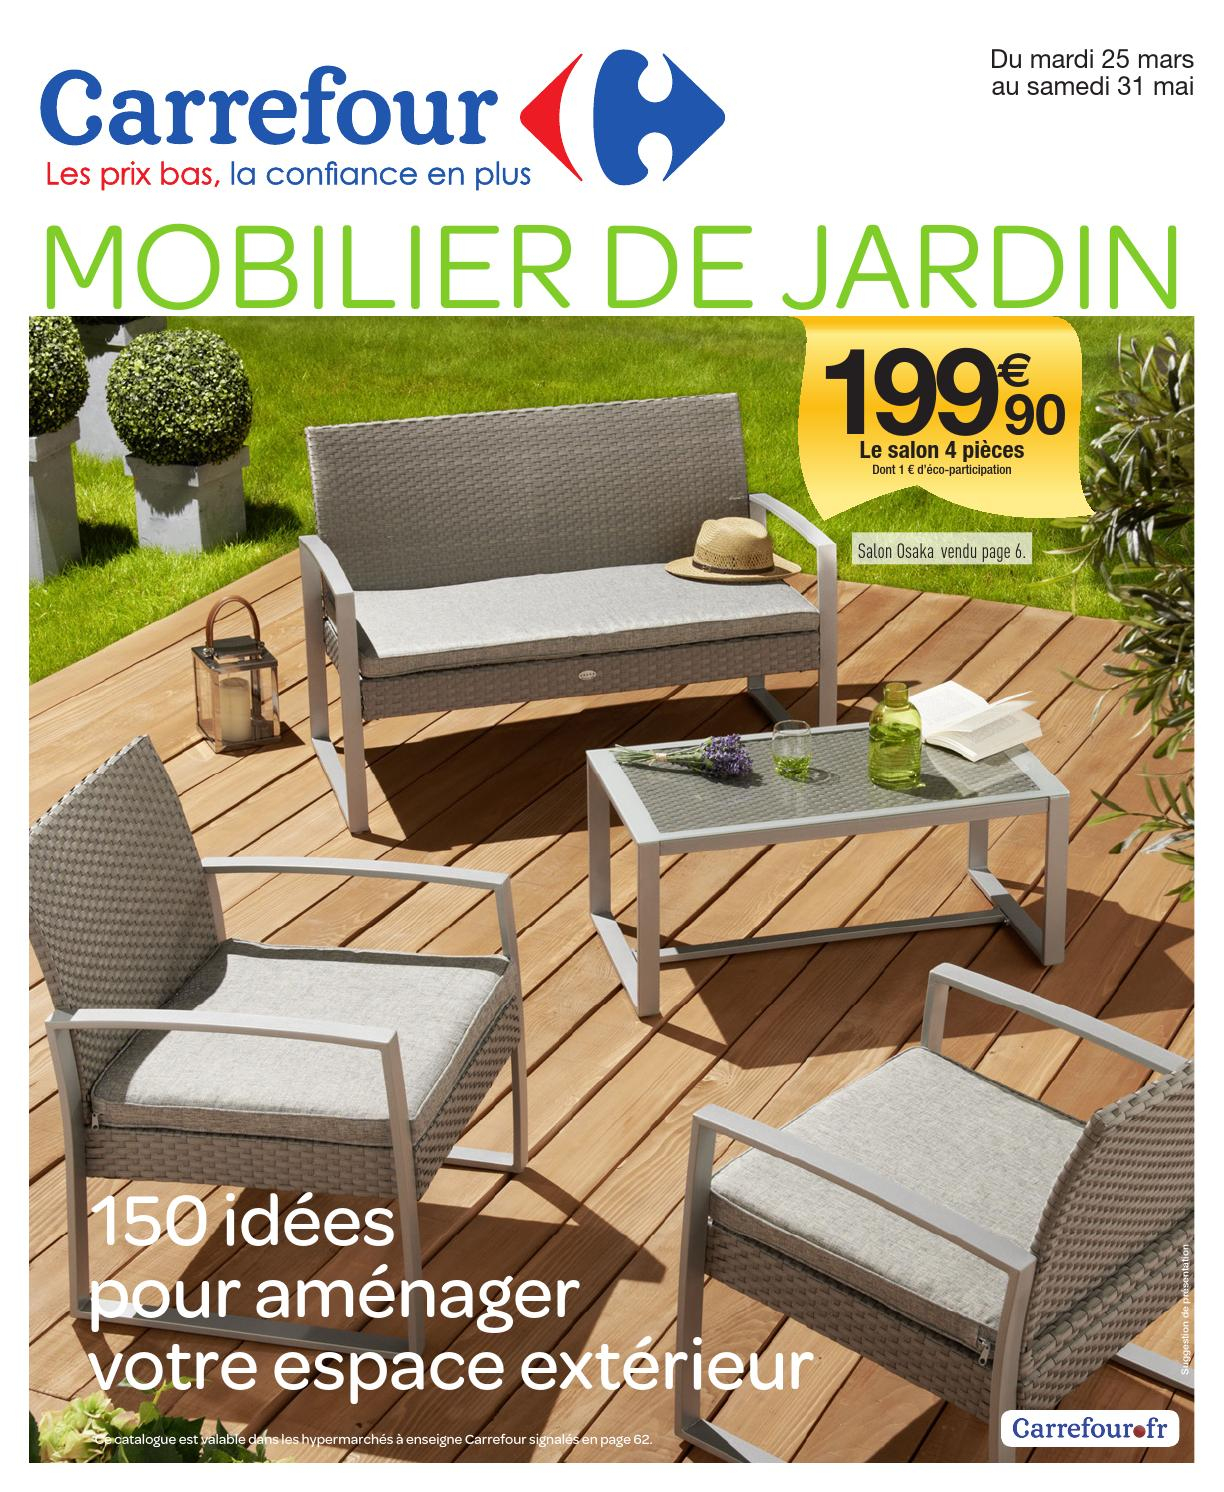 Catalogue Carrefour - 25.03-31.05.2014 By Joe Monroe - Issuu avec Soldes Mobilier De Jardin